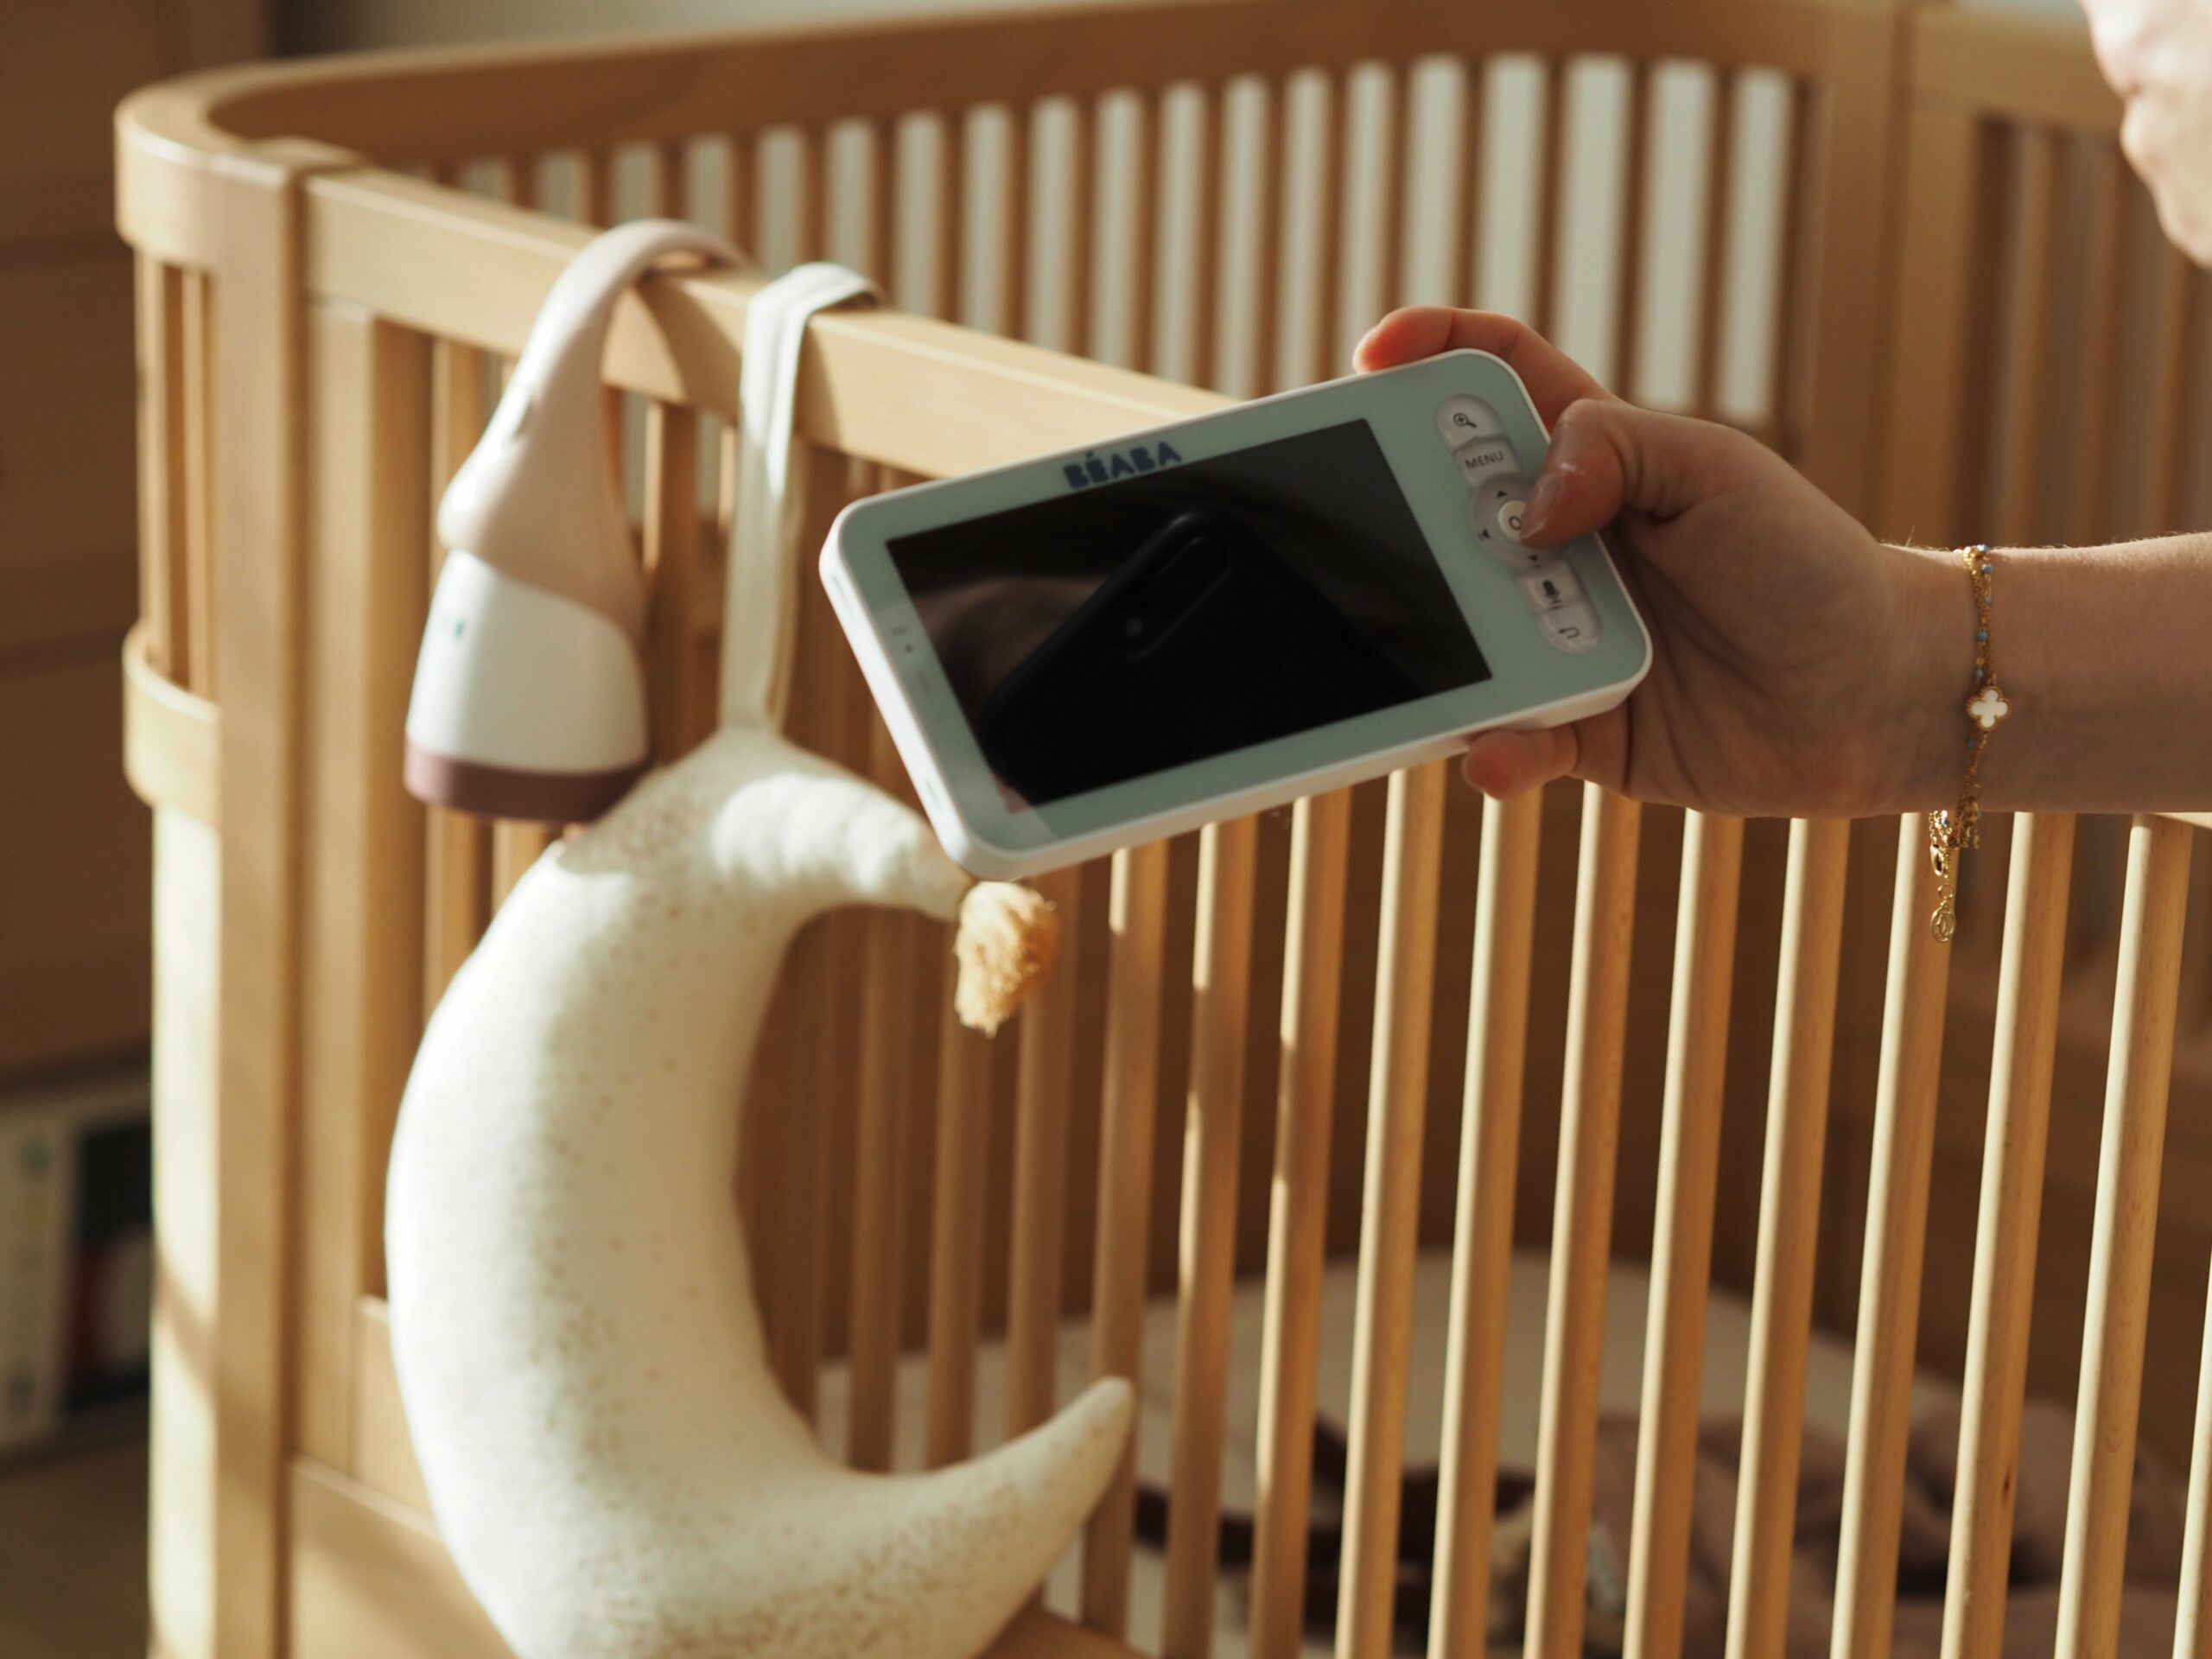 Vigilabebés vídeo Baby monitor SMART Chicco